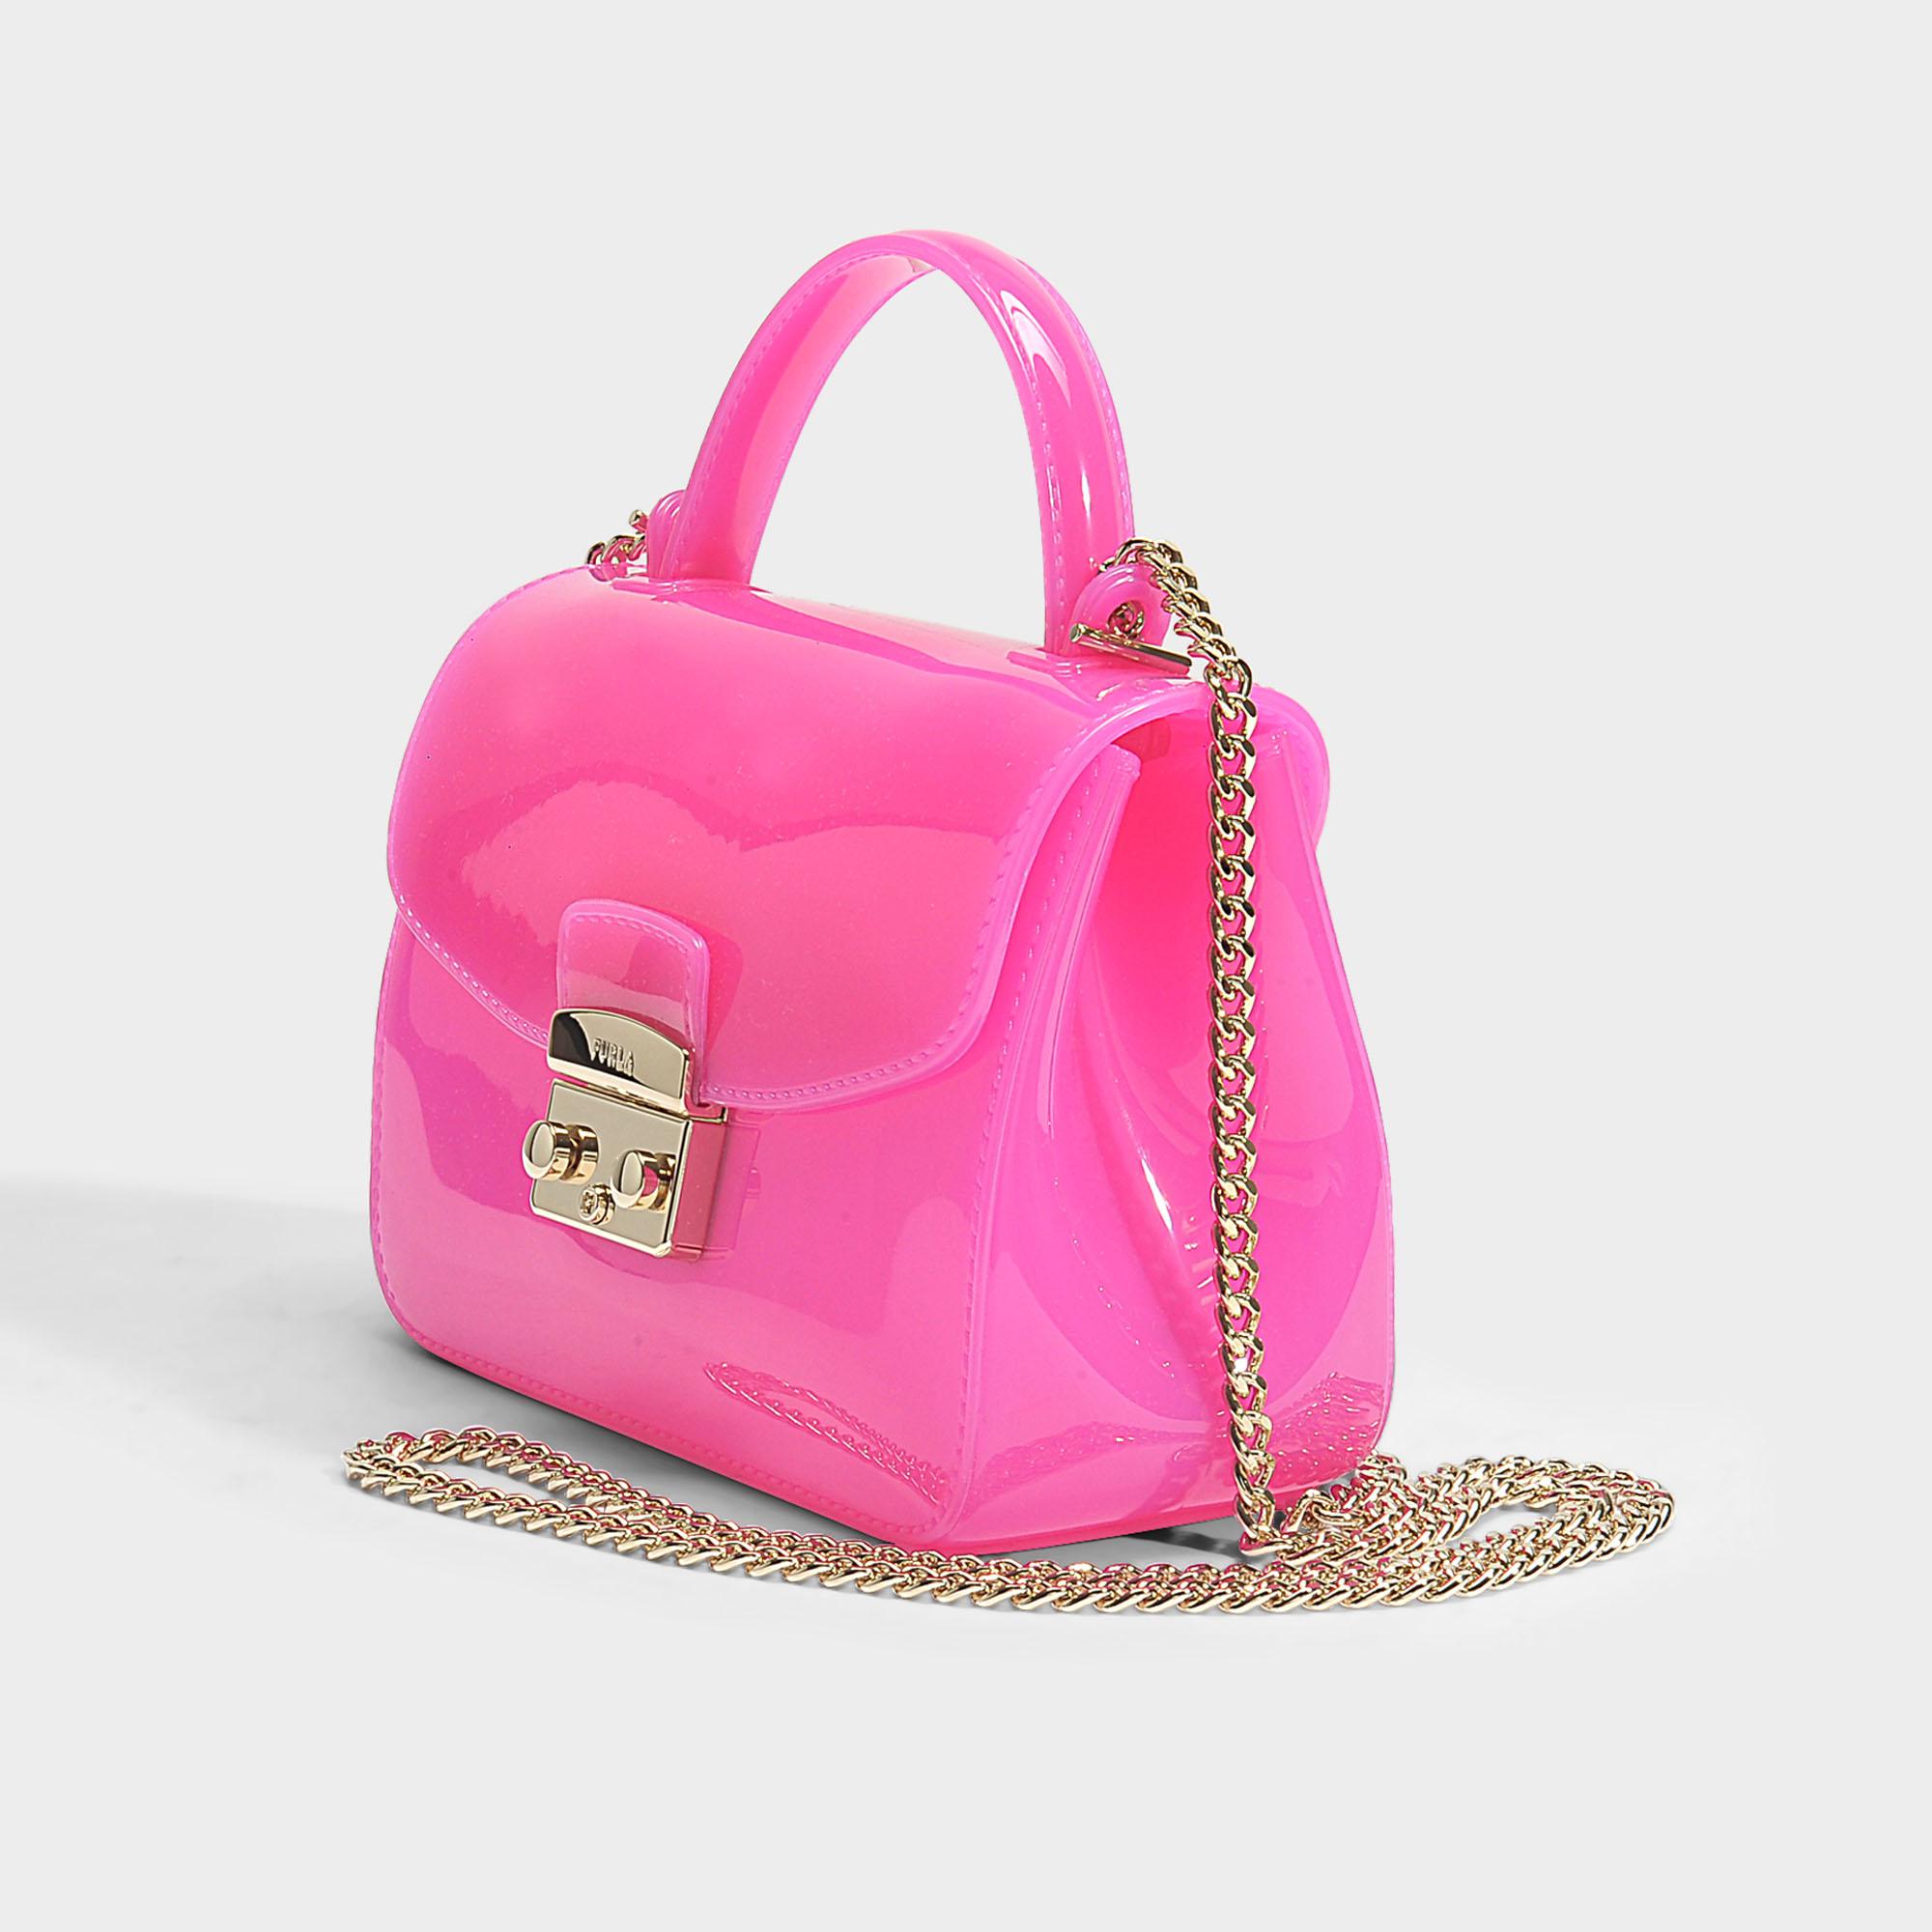 Voorzichtig gemakkelijk te kwetsen spannend Furla Candy Meringa Mini Crossbody Bag In Fuchsia Pvc in Pink | Lyst